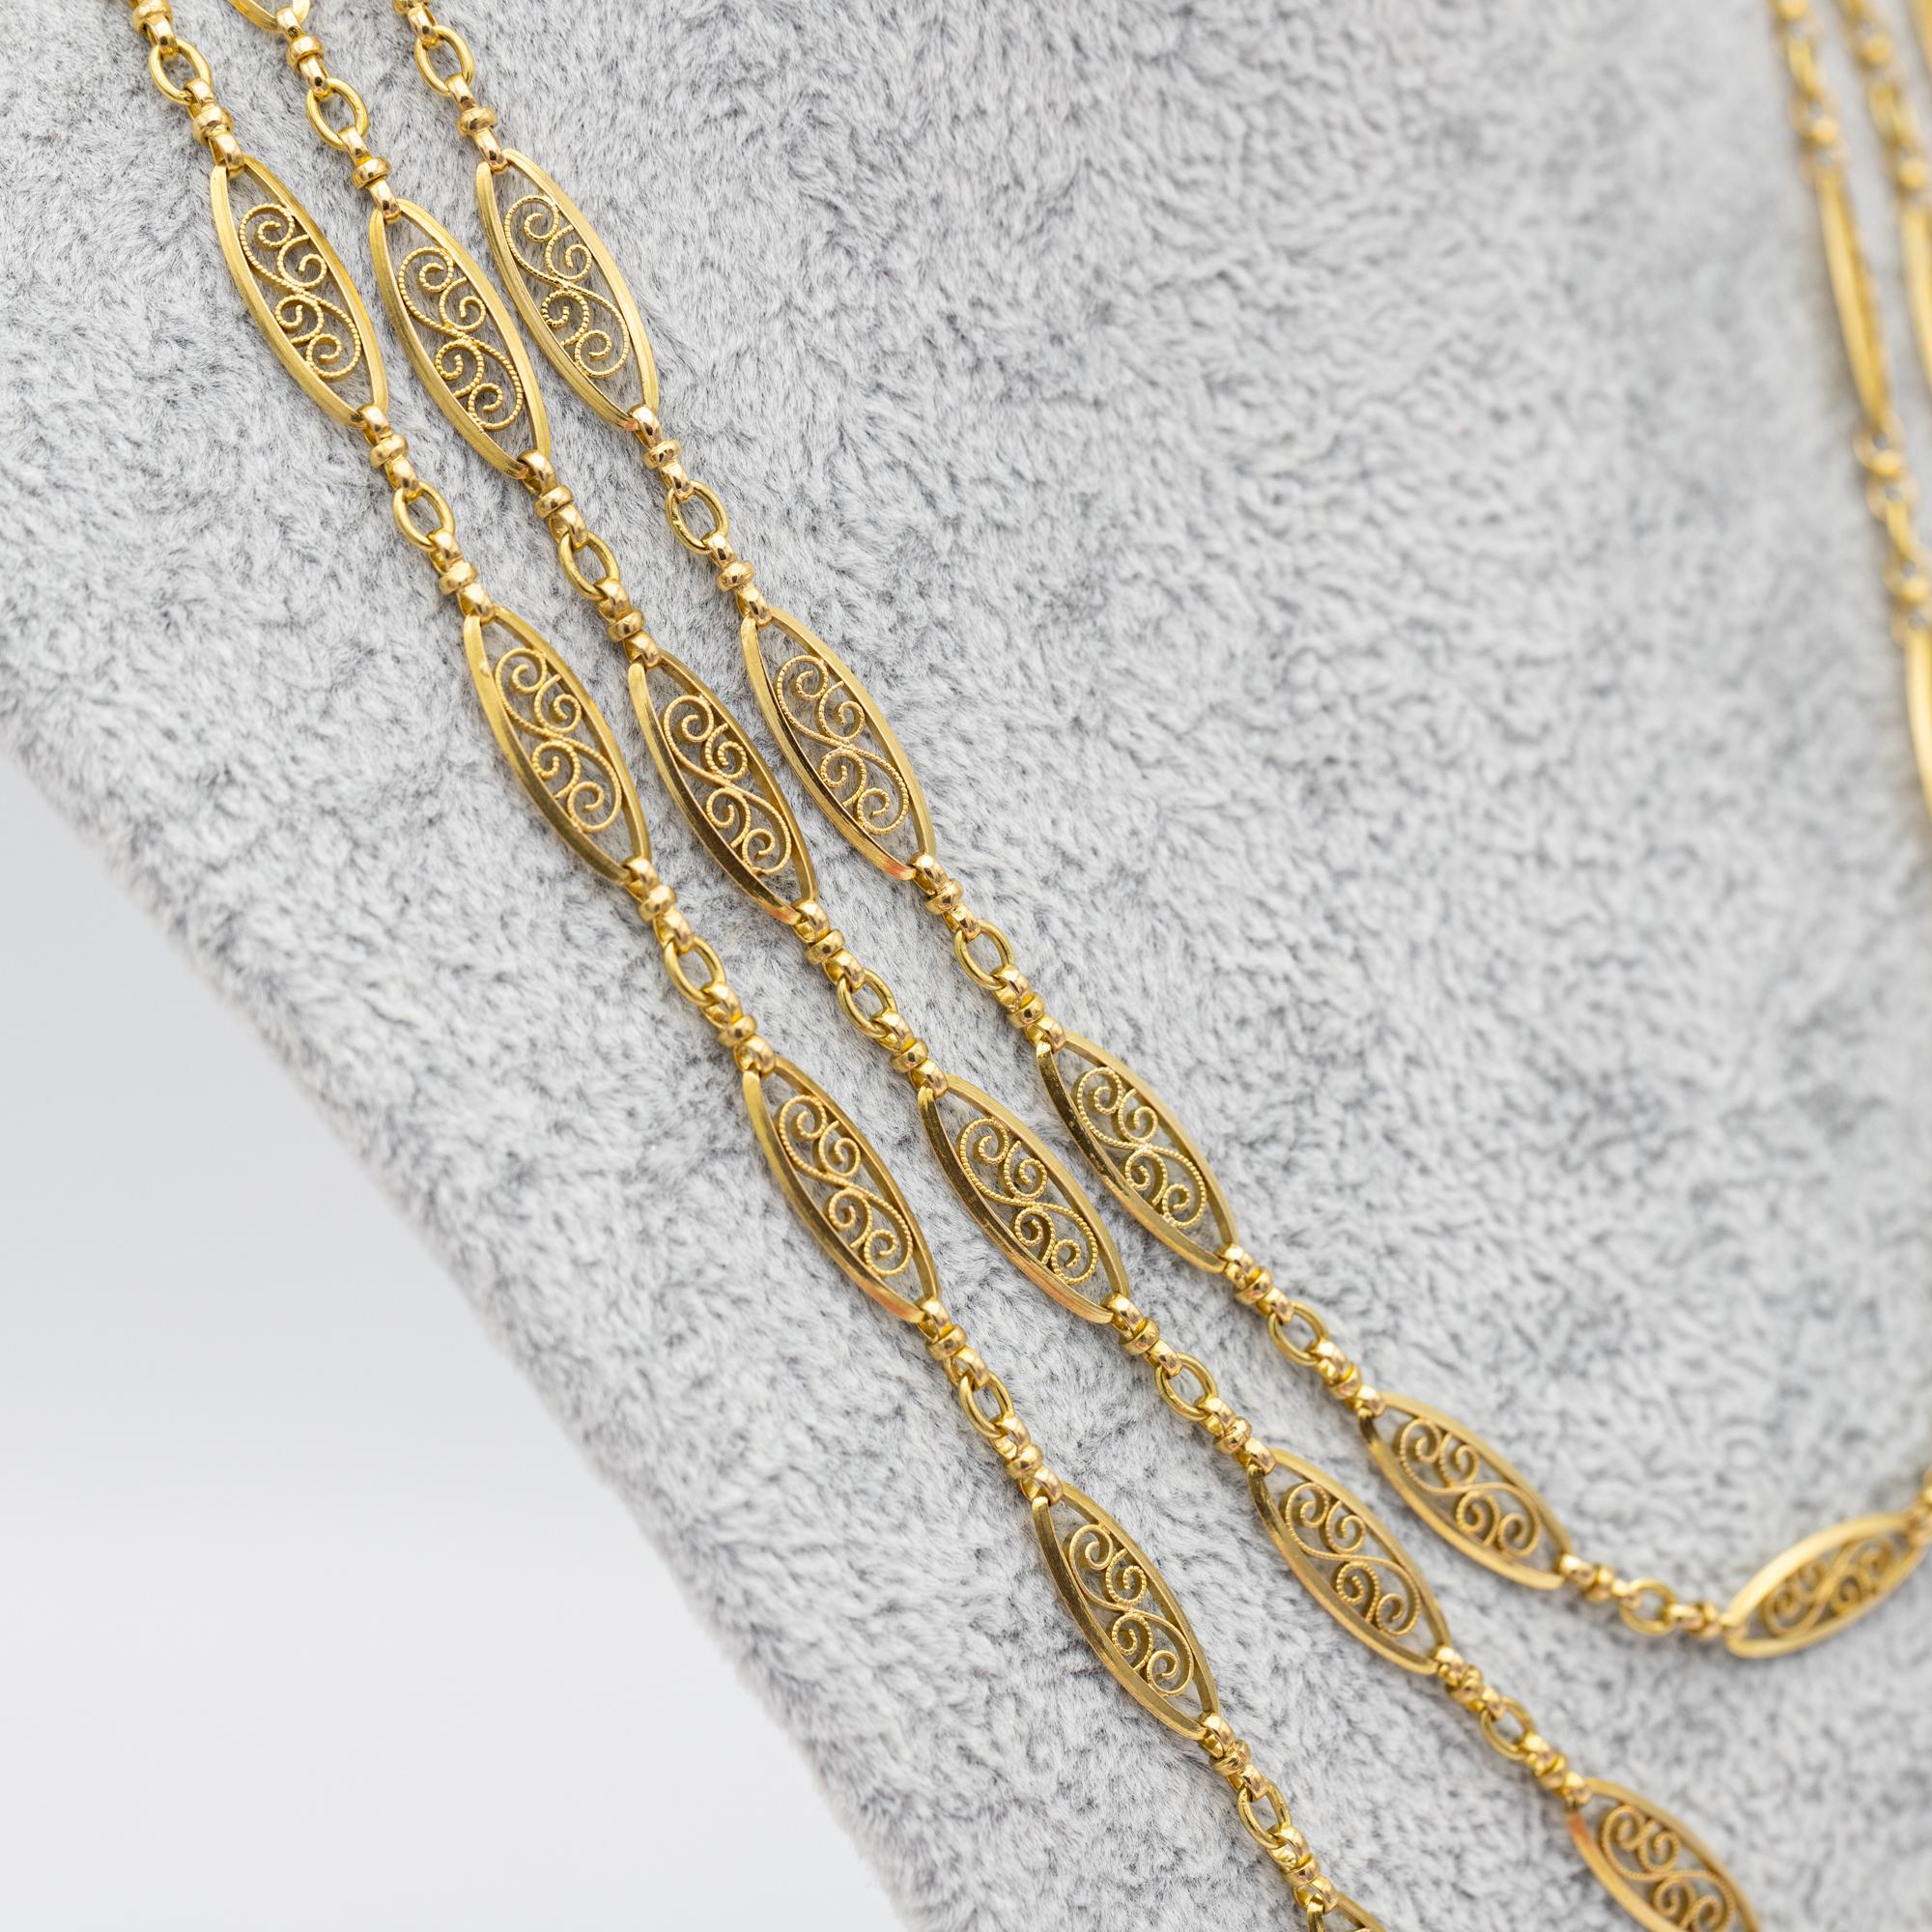 Antique 18k gold Sautoir necklace, 155cm long guard, Victorian double rope chain 8